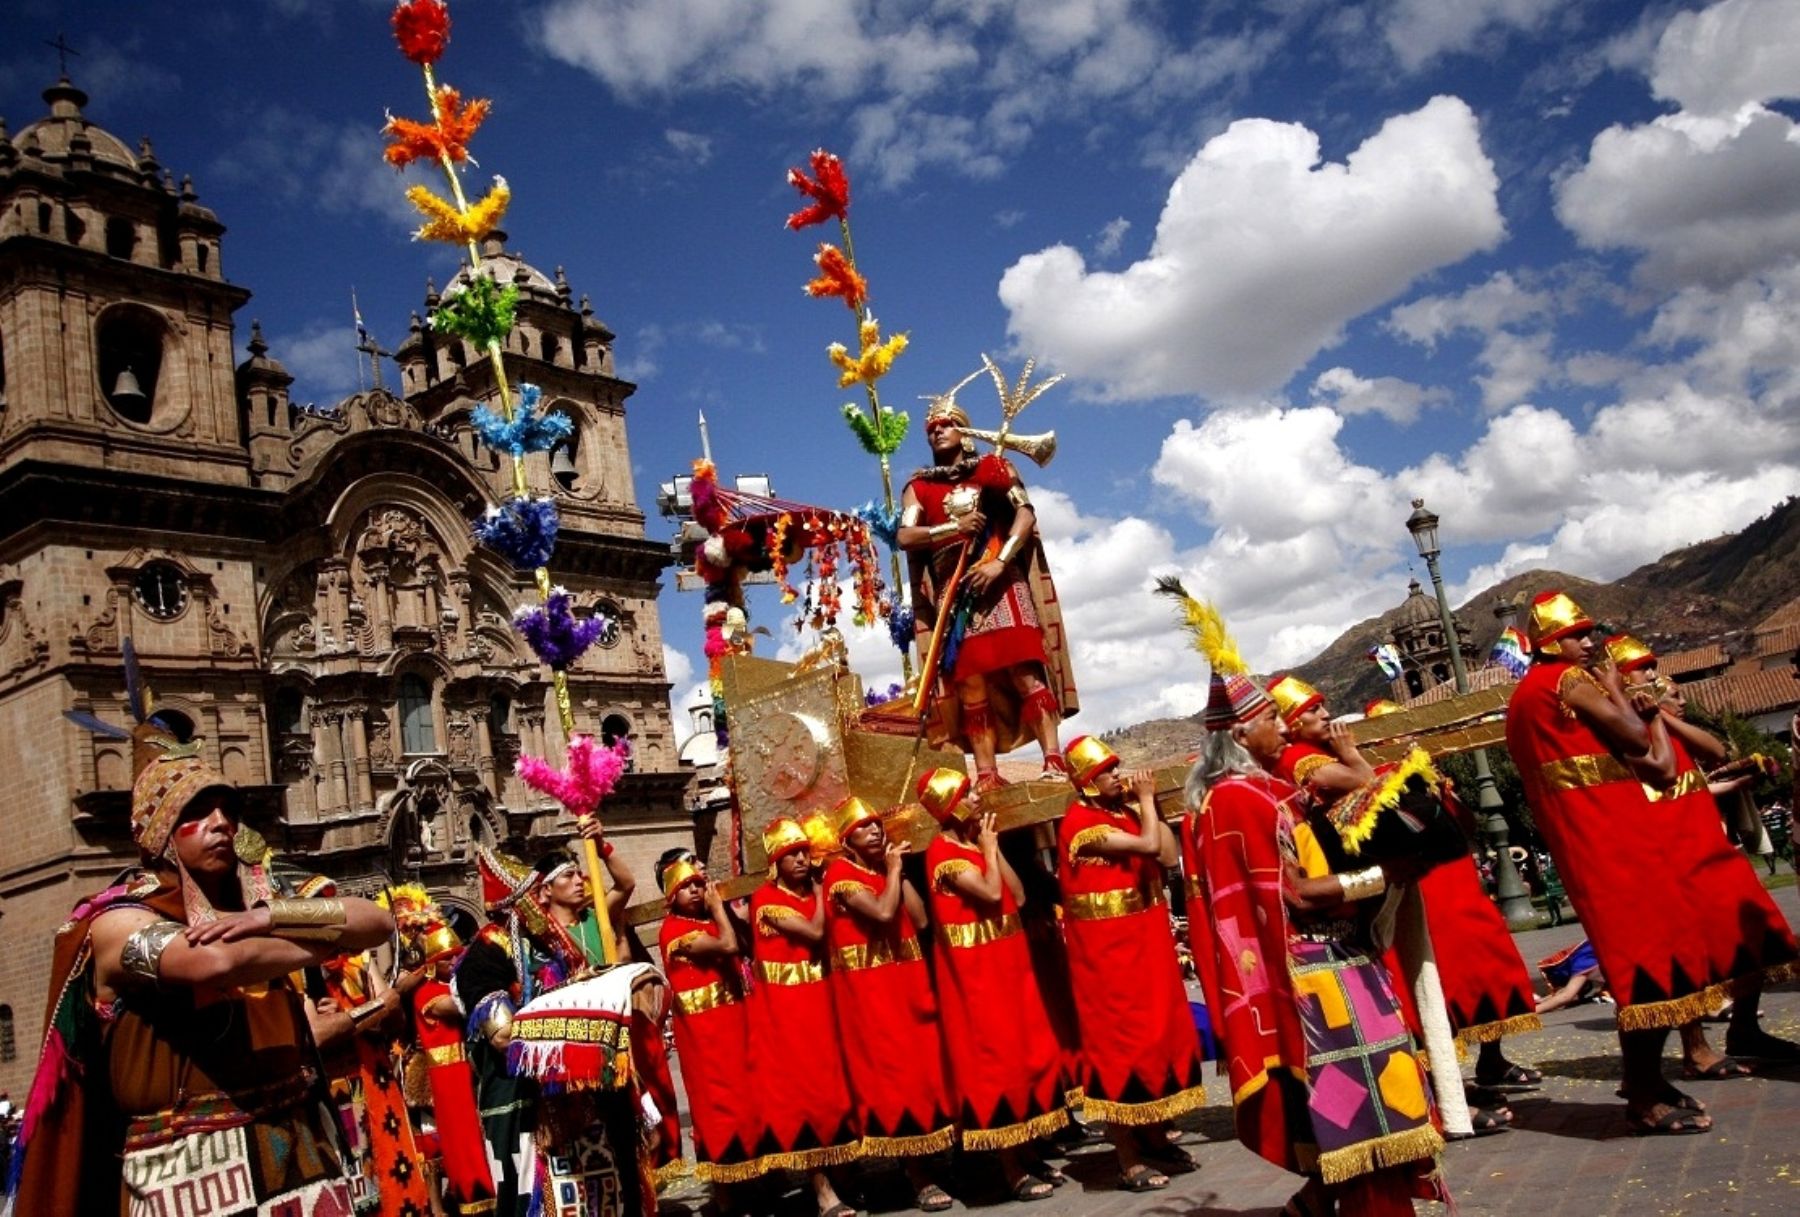 El encanto que genera Cusco en los turistas de todo el planeta no solo se mantiene, sino que parece potenciarse cada vez más. Así lo demuestra su elección como la mejor ciudad para visitar este año en América del Sur y  Central, según la encuesta “World’s Best Awards 2023” de la prestigiosa revista internacional de viajes y turismo Travel + Leisure. ANDINA/Archivo